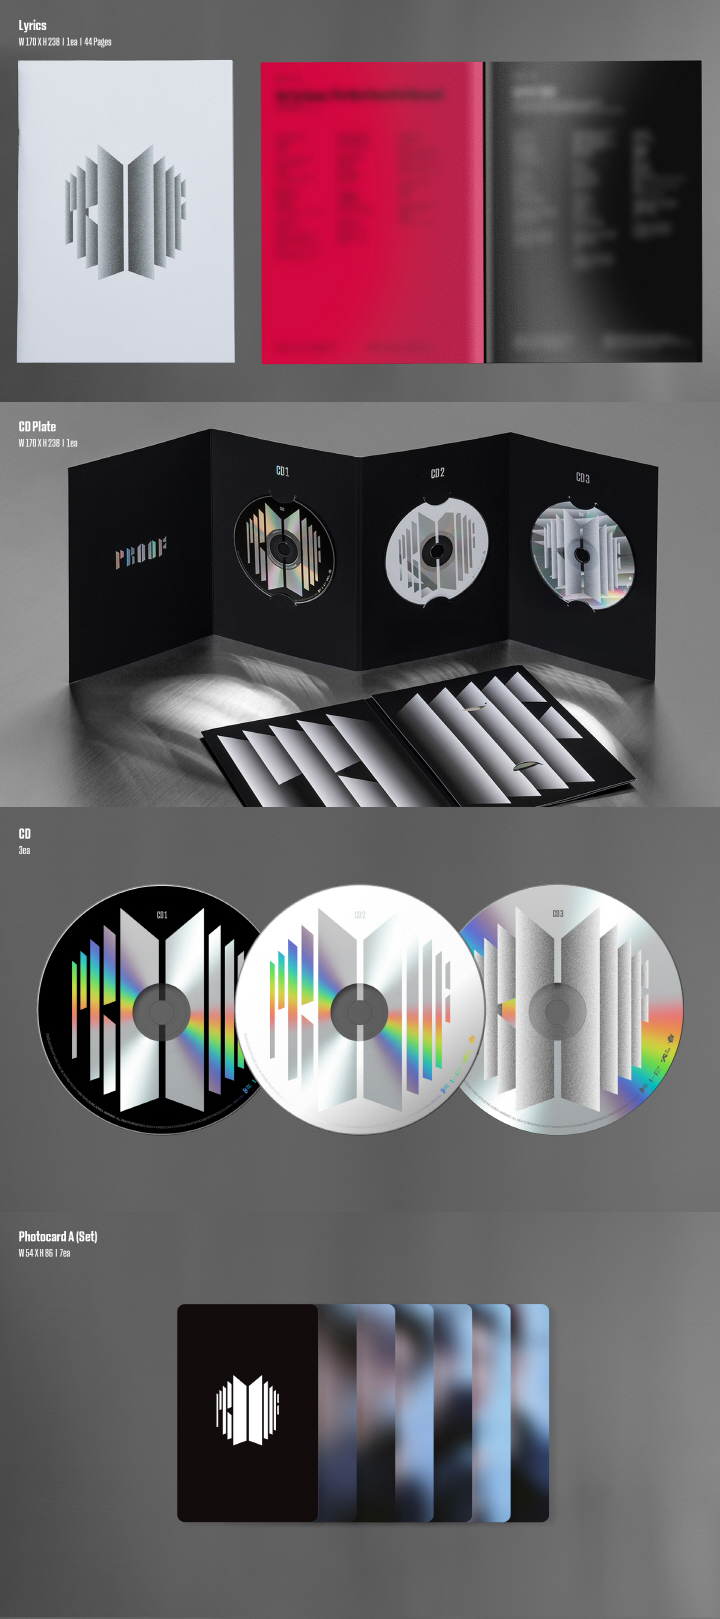 BTS - [PROOF] ALBUM